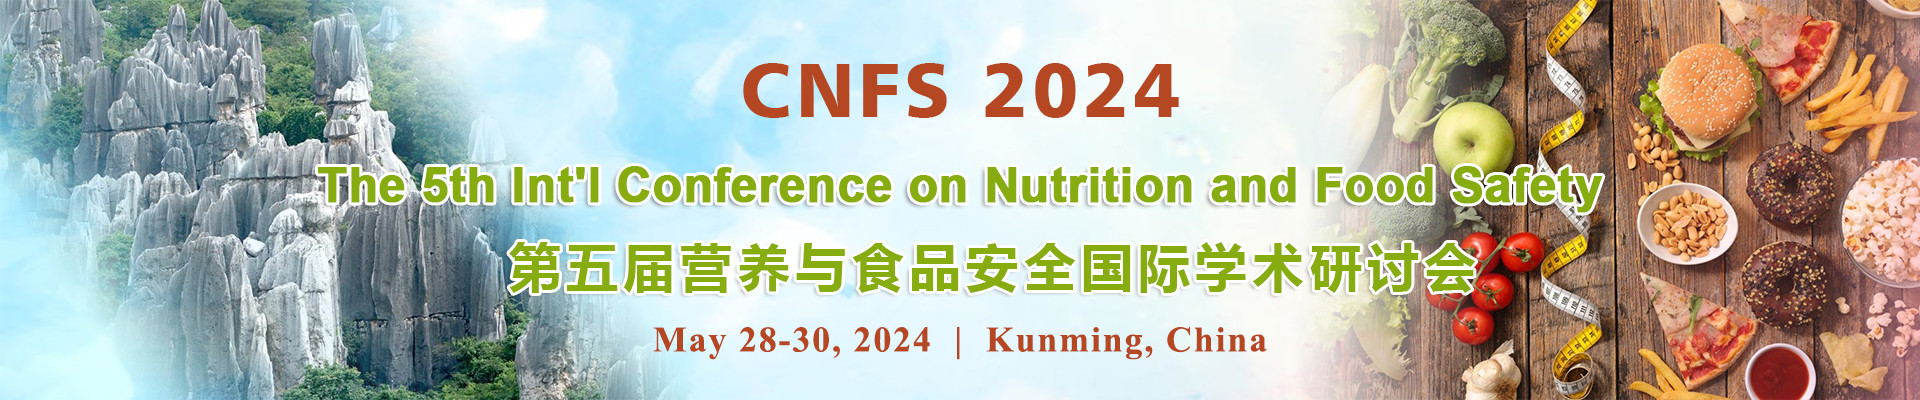 第五屆營養與食品安全國際學術研討會(CNFS 2024)